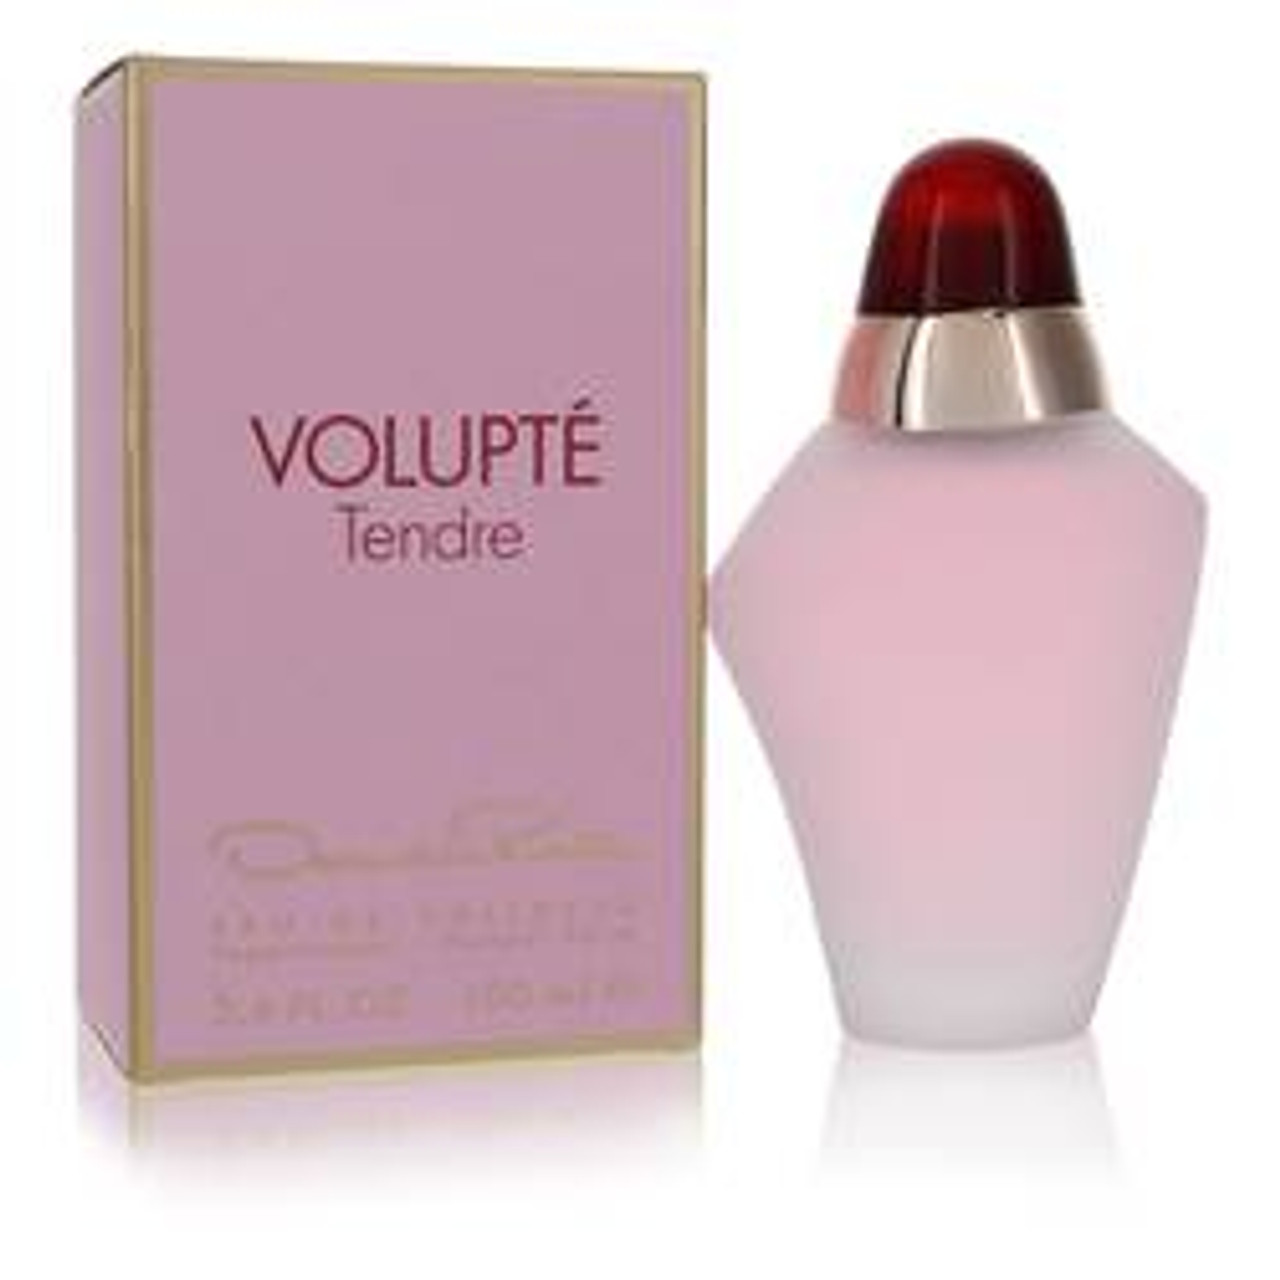 Volupte Tendre Perfume By Oscar De La Renta Eau De Toilette Spray 3.4 oz for Women - [From 63.00 - Choose pk Qty ] - *Ships from Miami